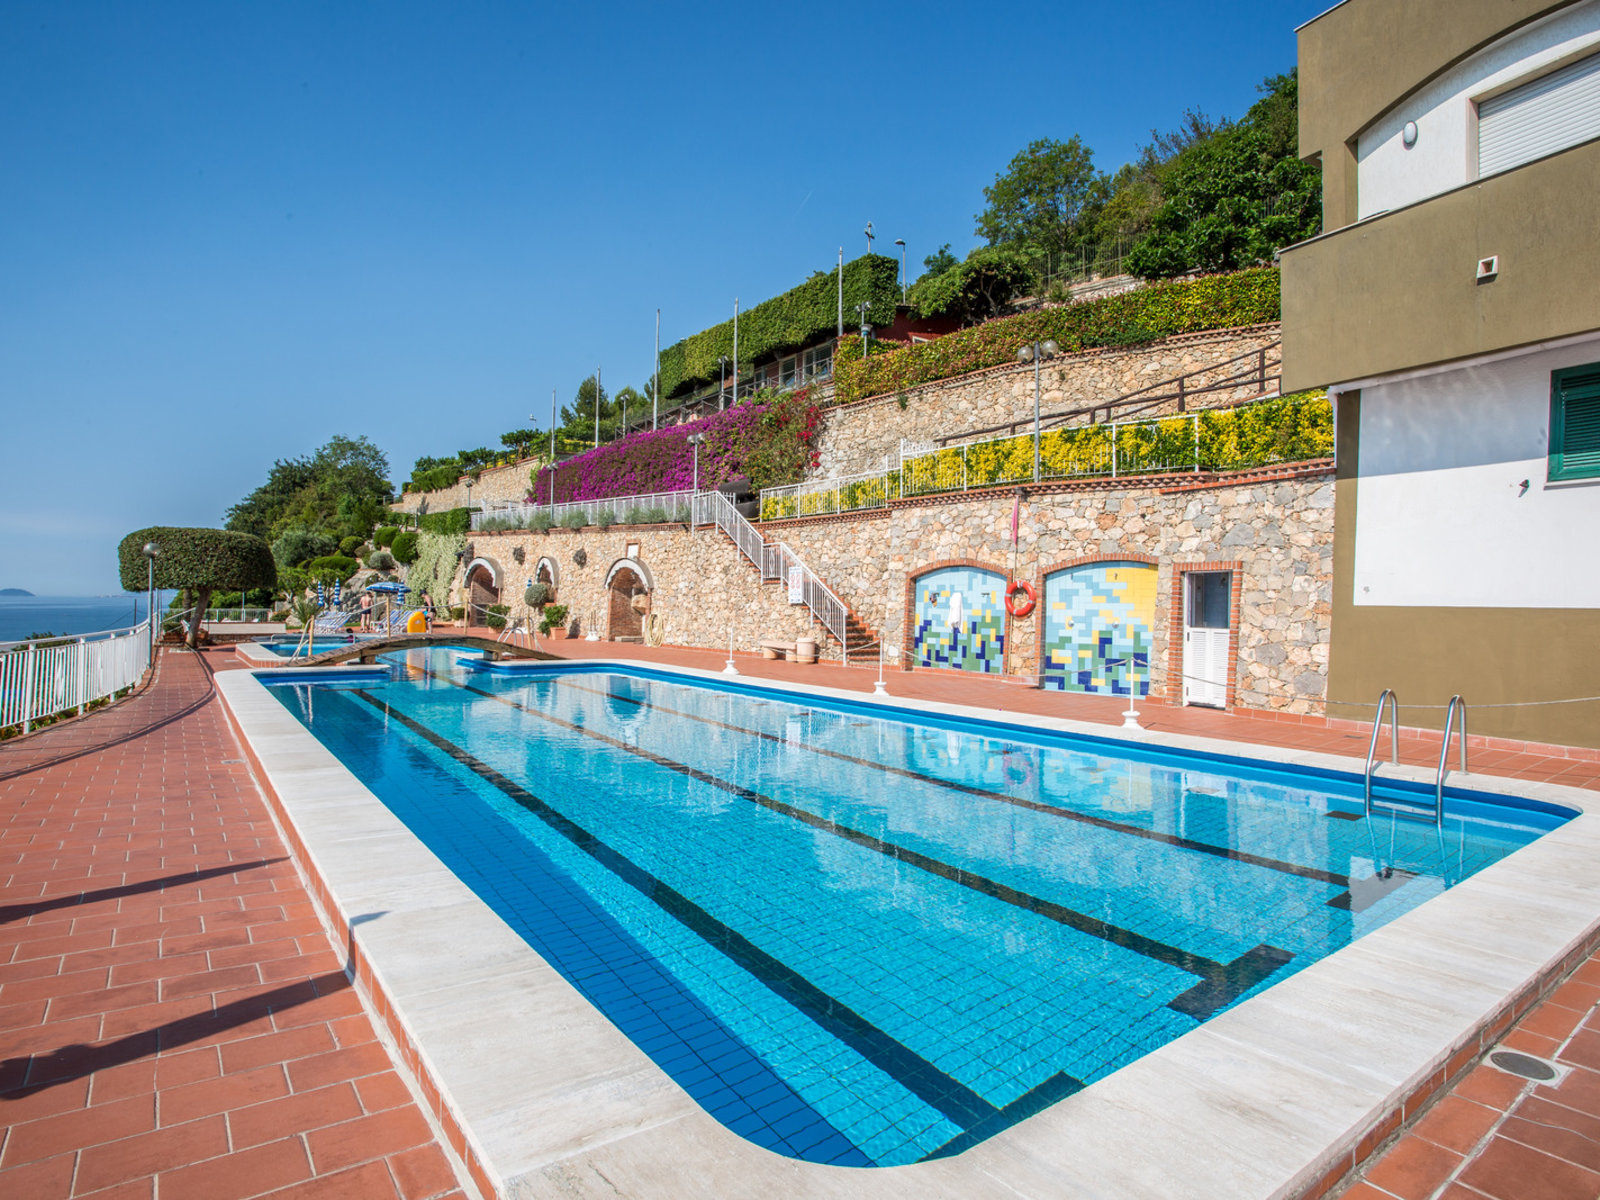 Hotel Residence Sant' Anna in Pietra Ligure günstig buchen bei